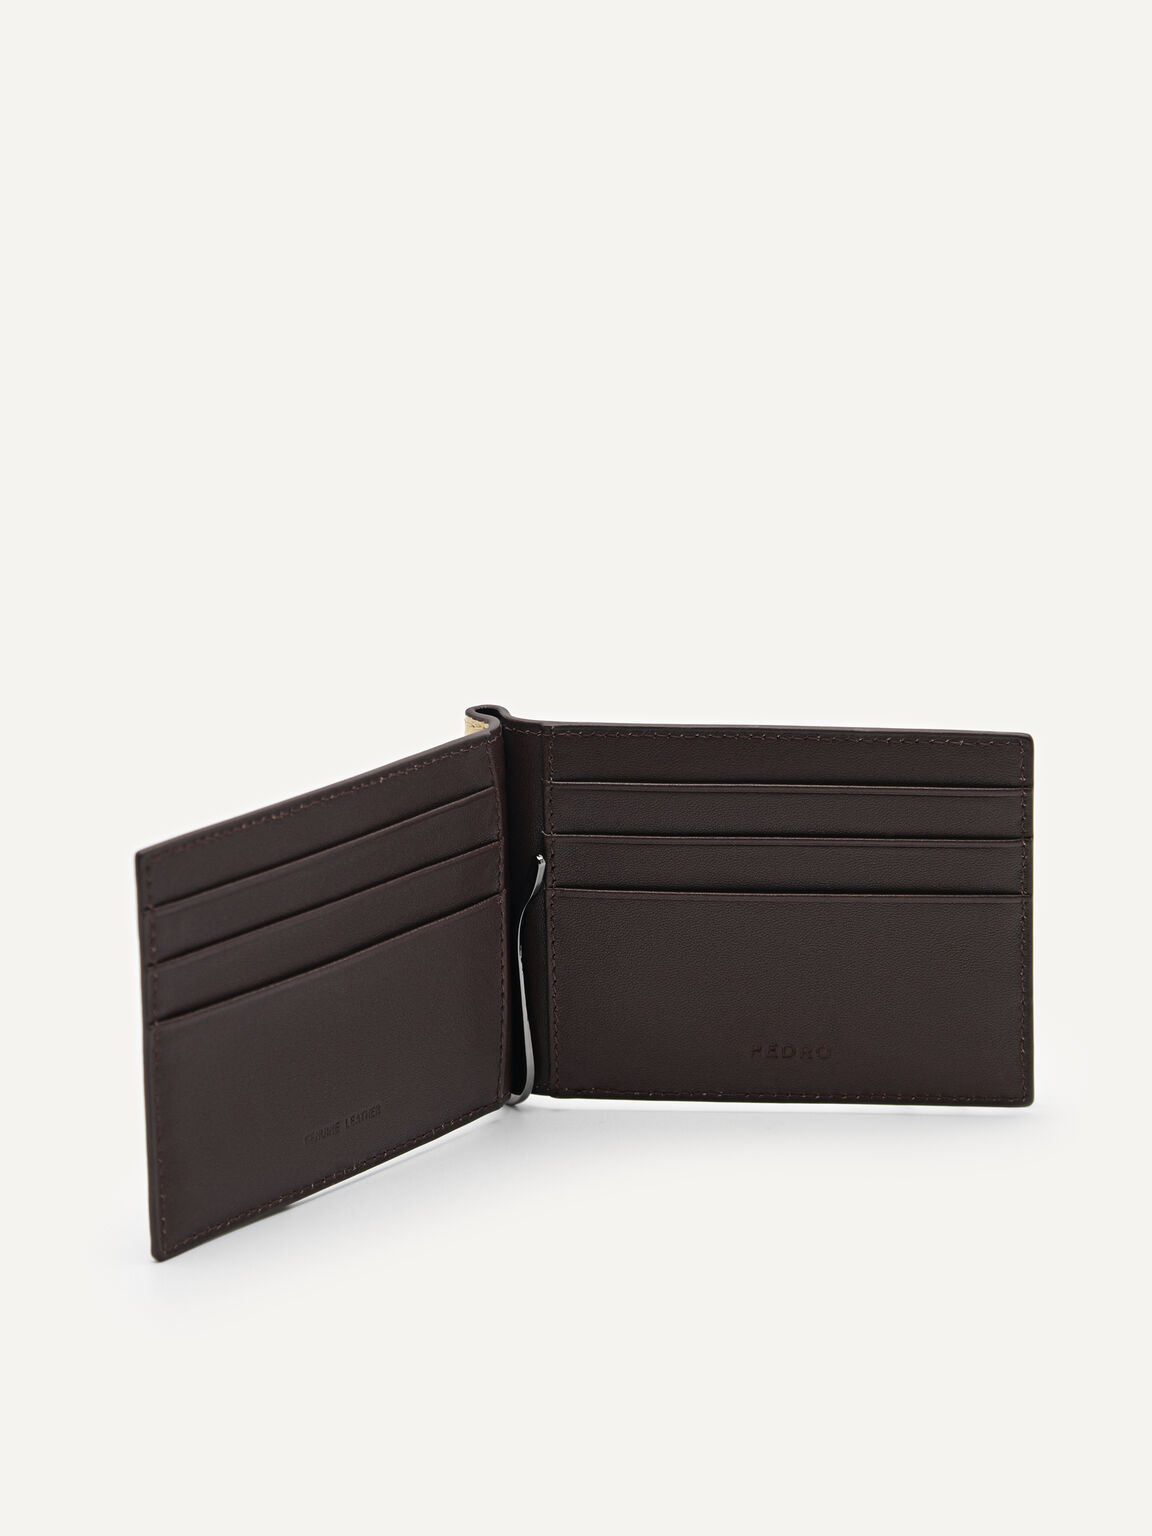 Oliver Leather Bi-Fold Money Clip Cardholder, Sand